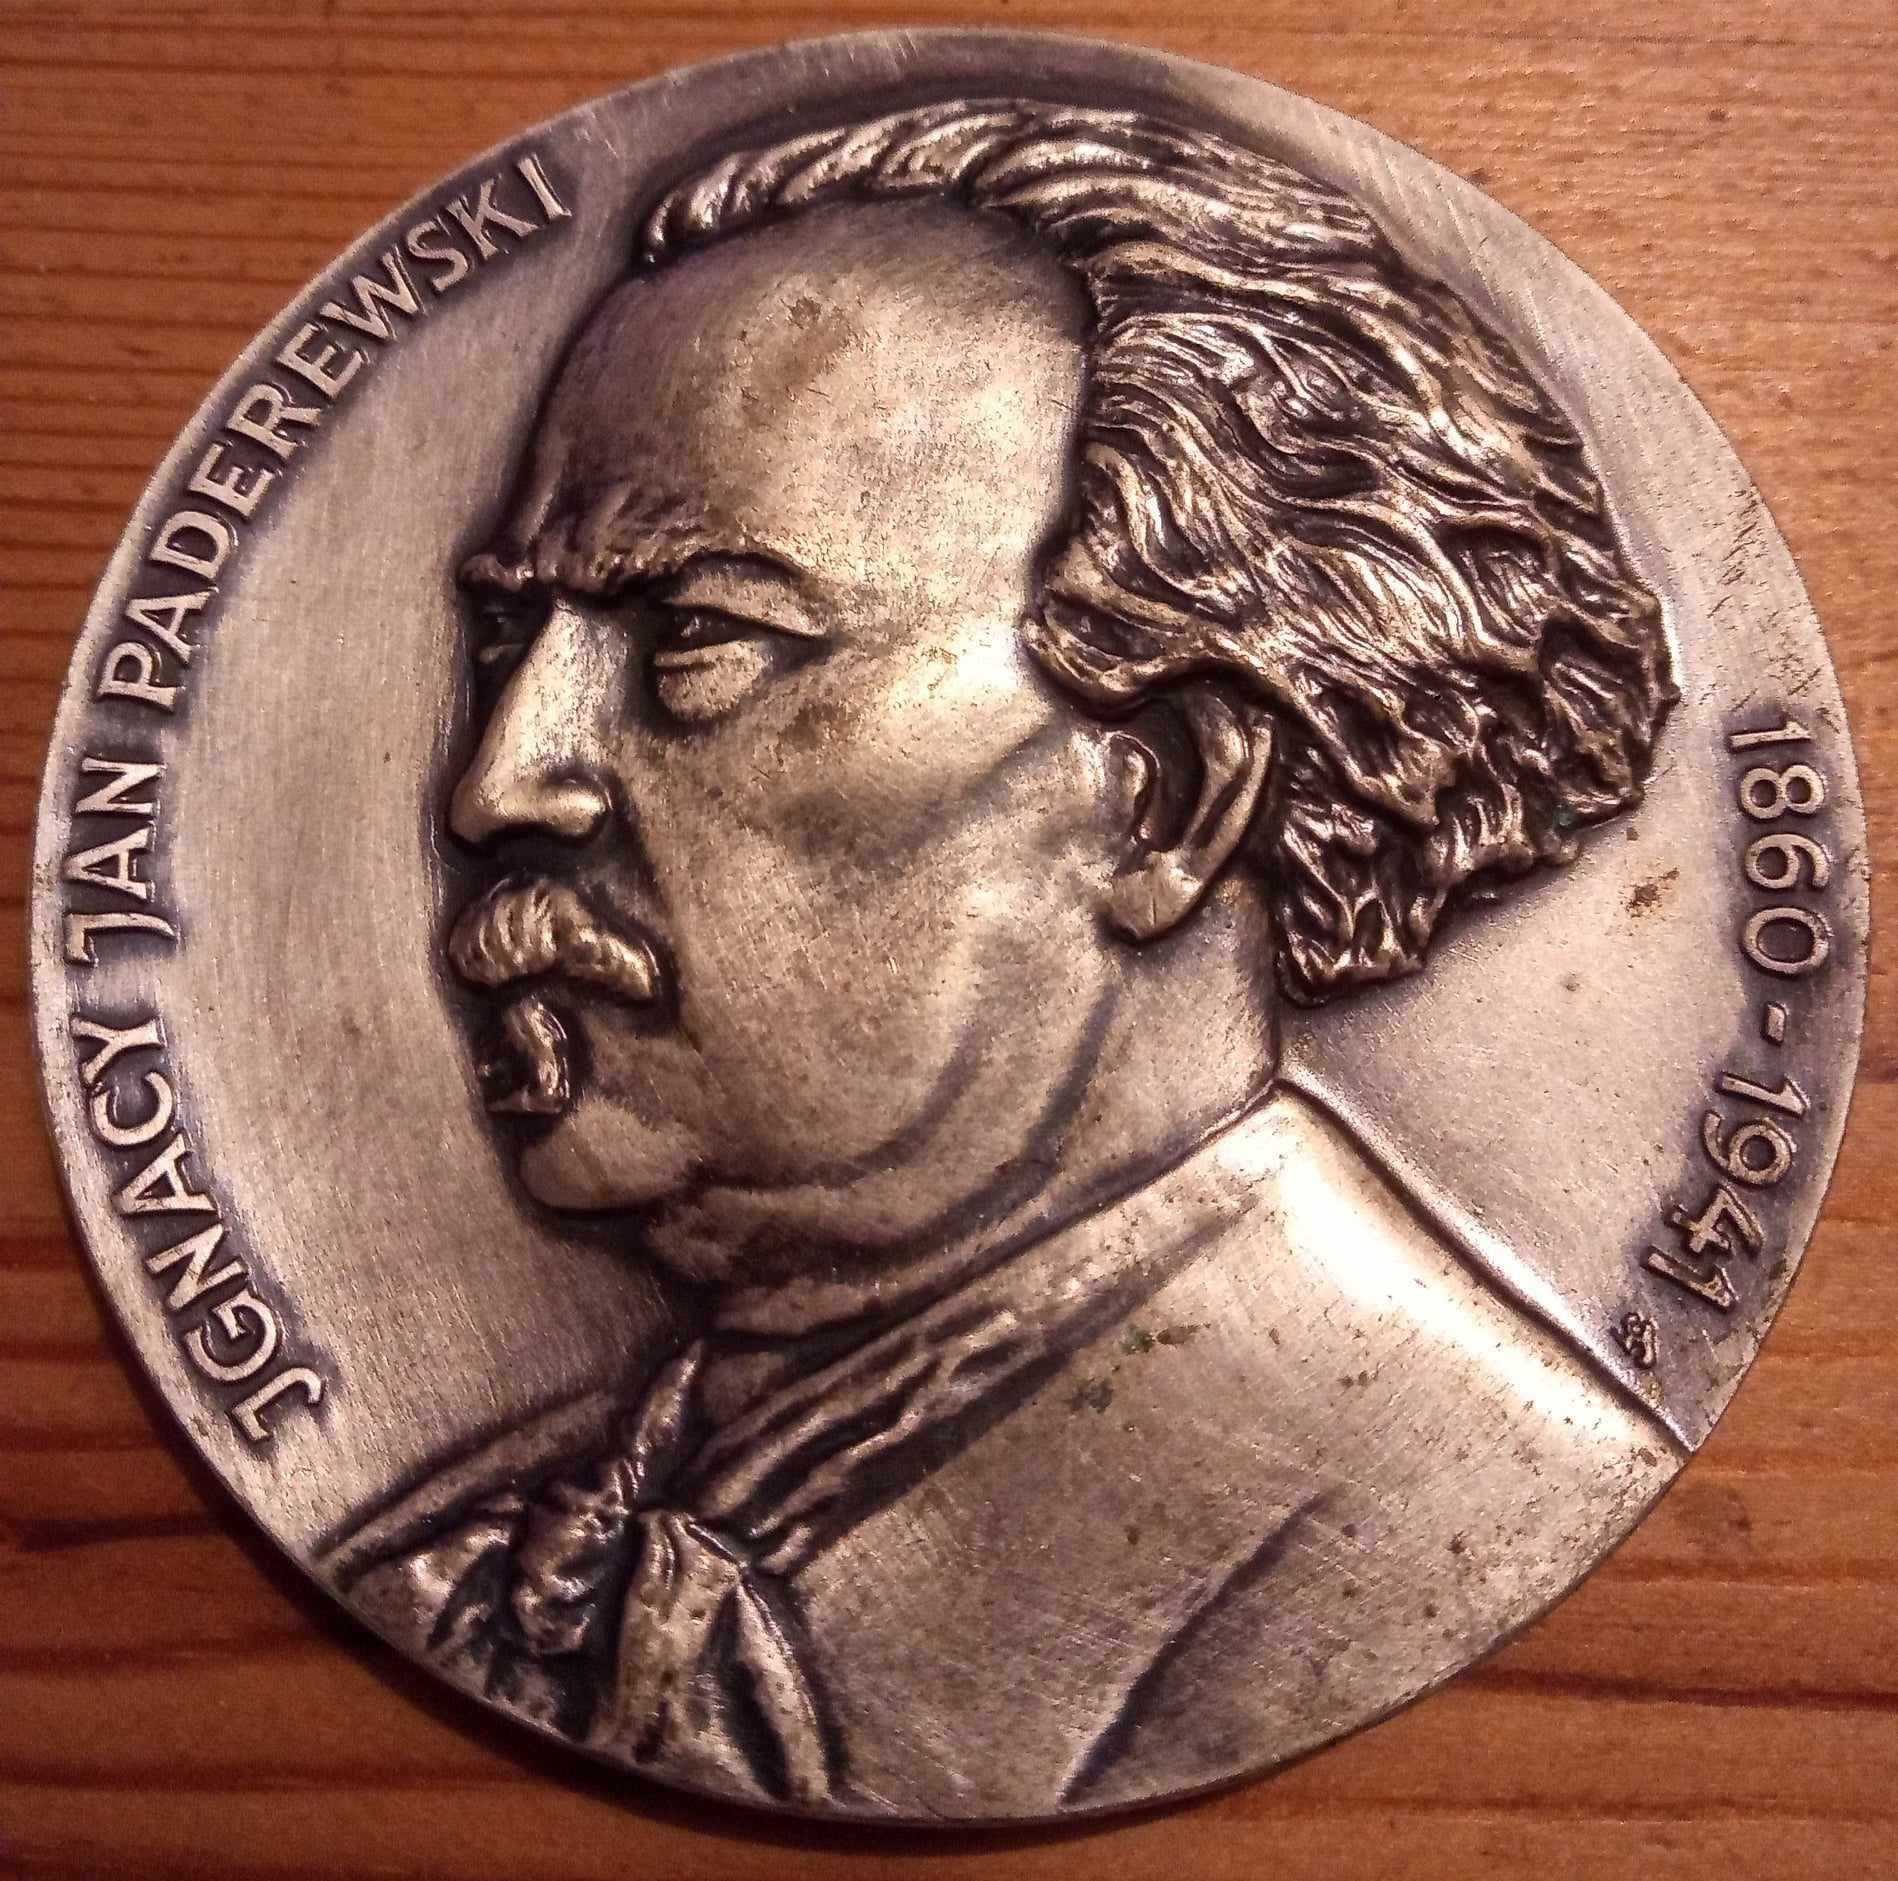 Duży medal (śr. 7cm). I.J. Paderewski